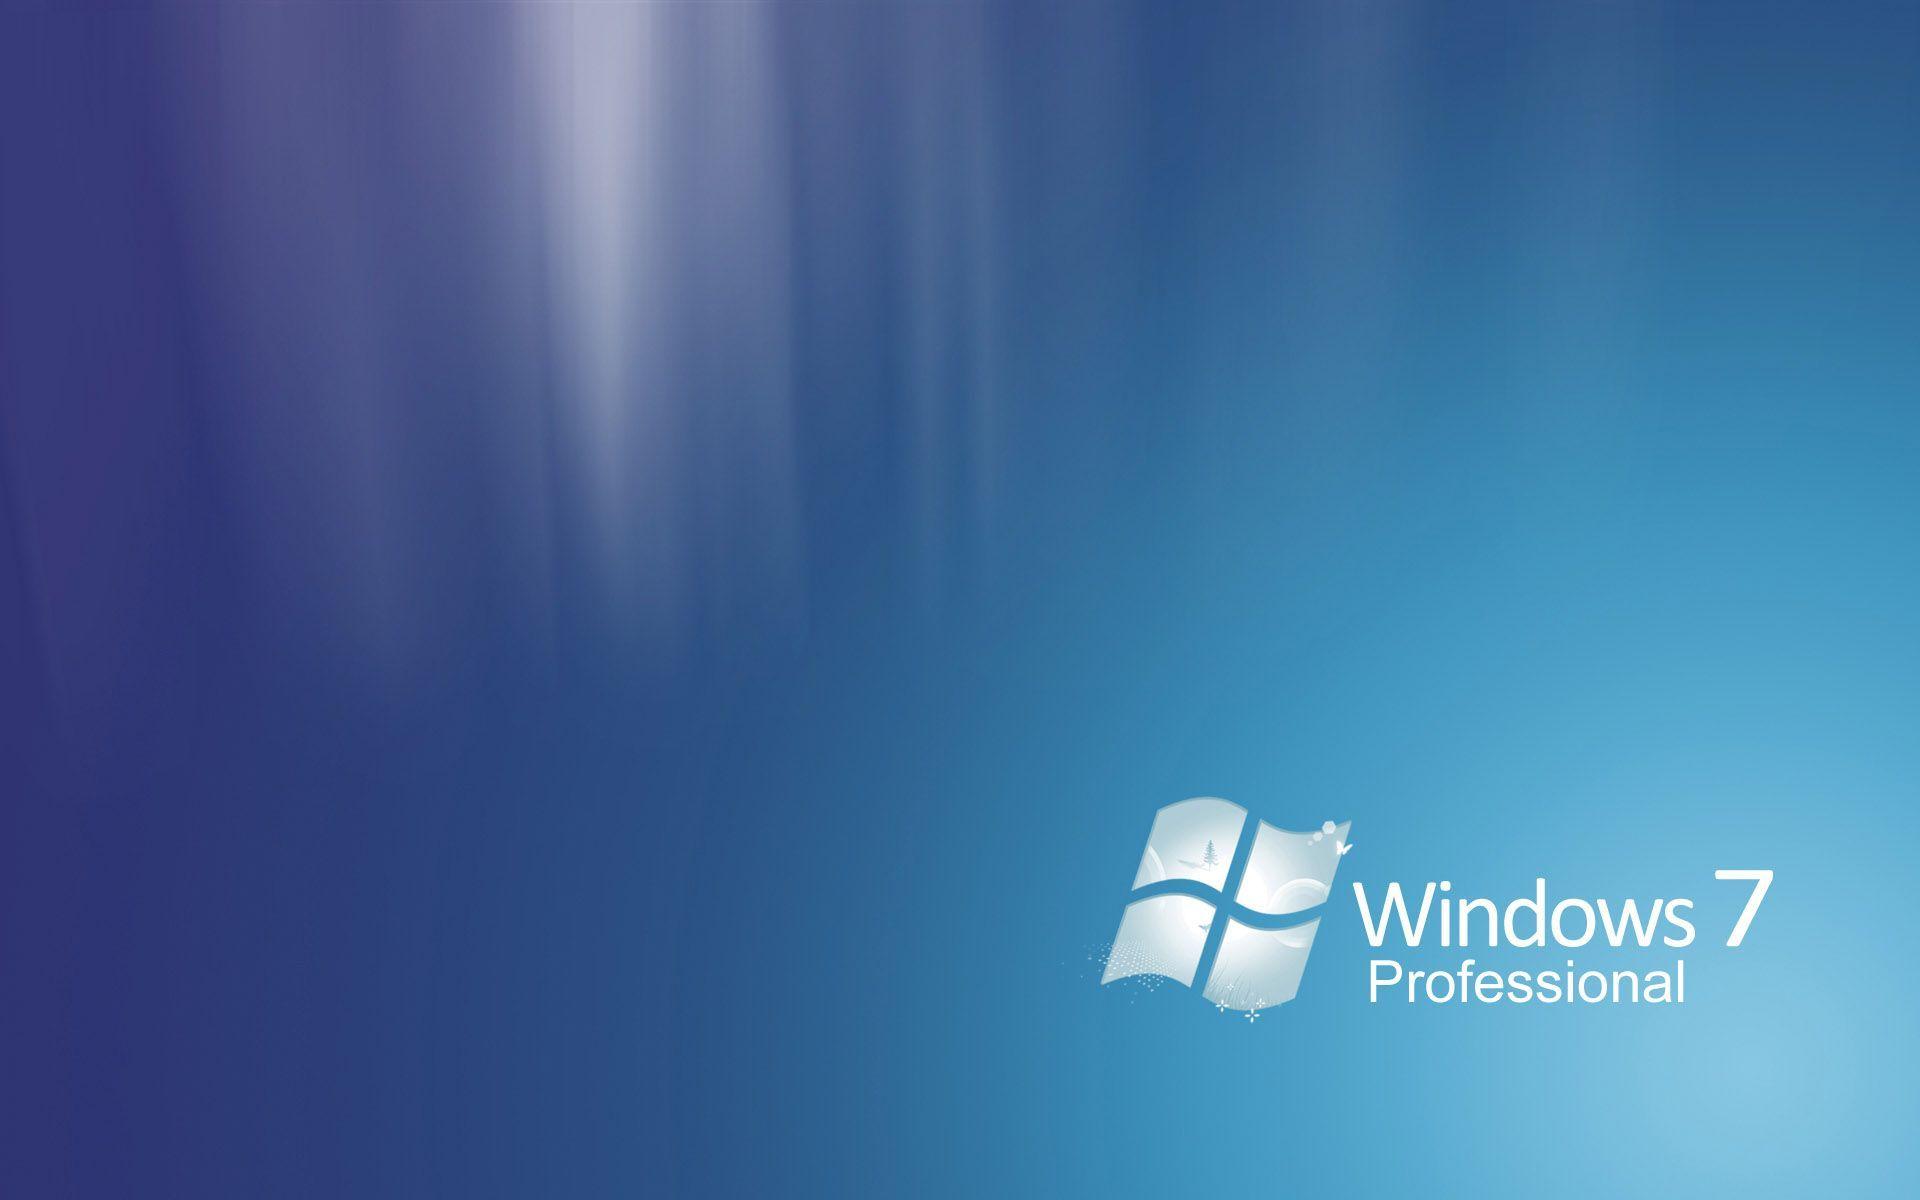 Windows 7 Professional Desktop Wallpapers Top Free Windows 7 Professional Desktop Backgrounds Wallpaperaccess